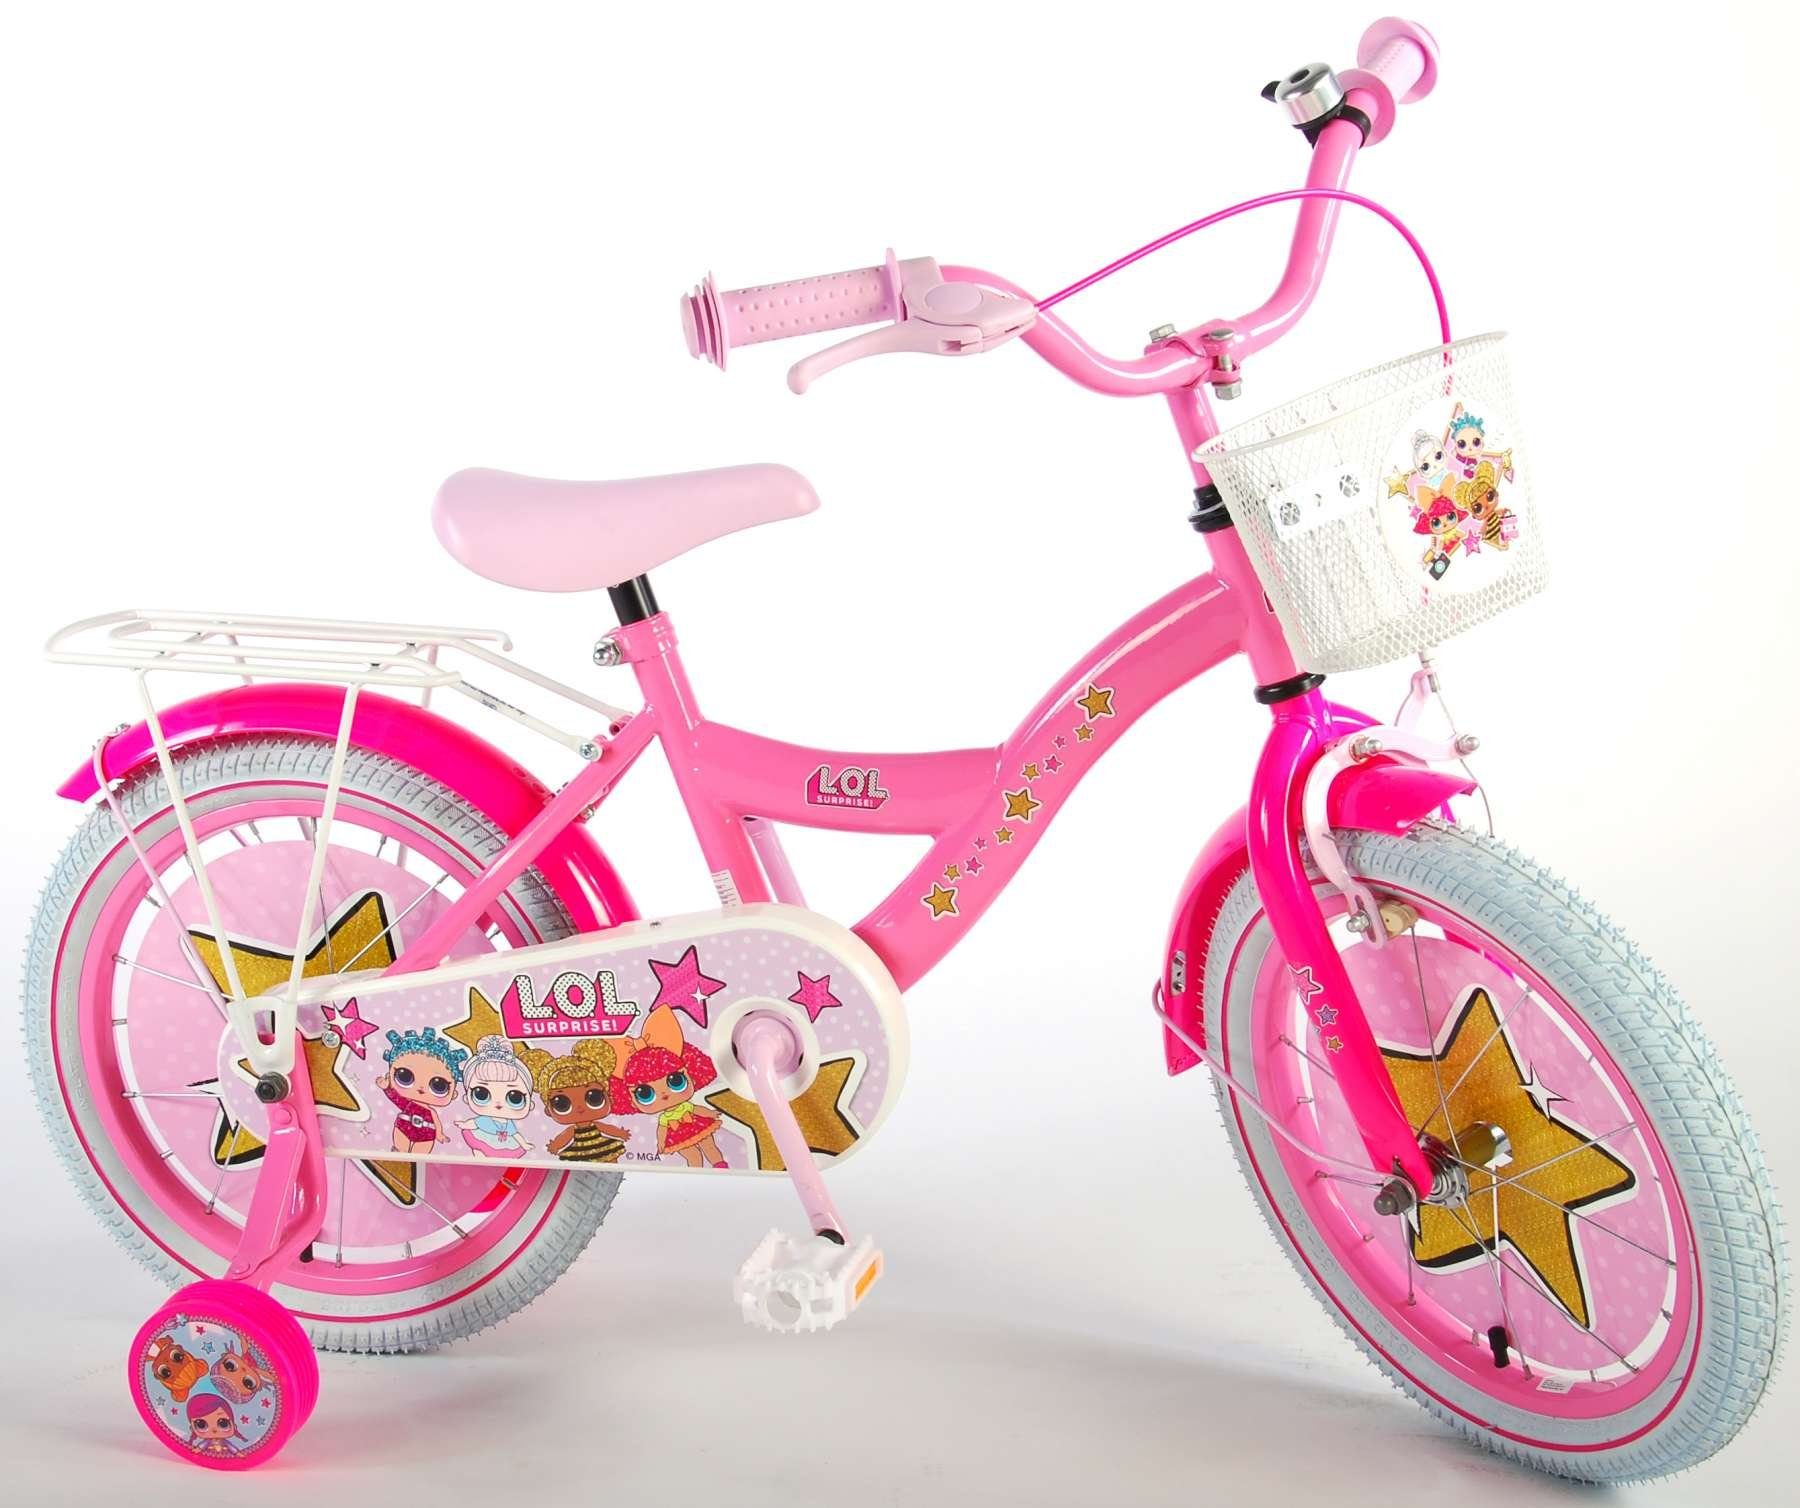 Volare Kinderfahrrad Mädchen - LOL Surprise - verschiedene Größen - pink - Rücktrittbremse, bis 60 kg, Luftbereifung, einstellbare Lenkerhöhe, 85% zusammengebaut